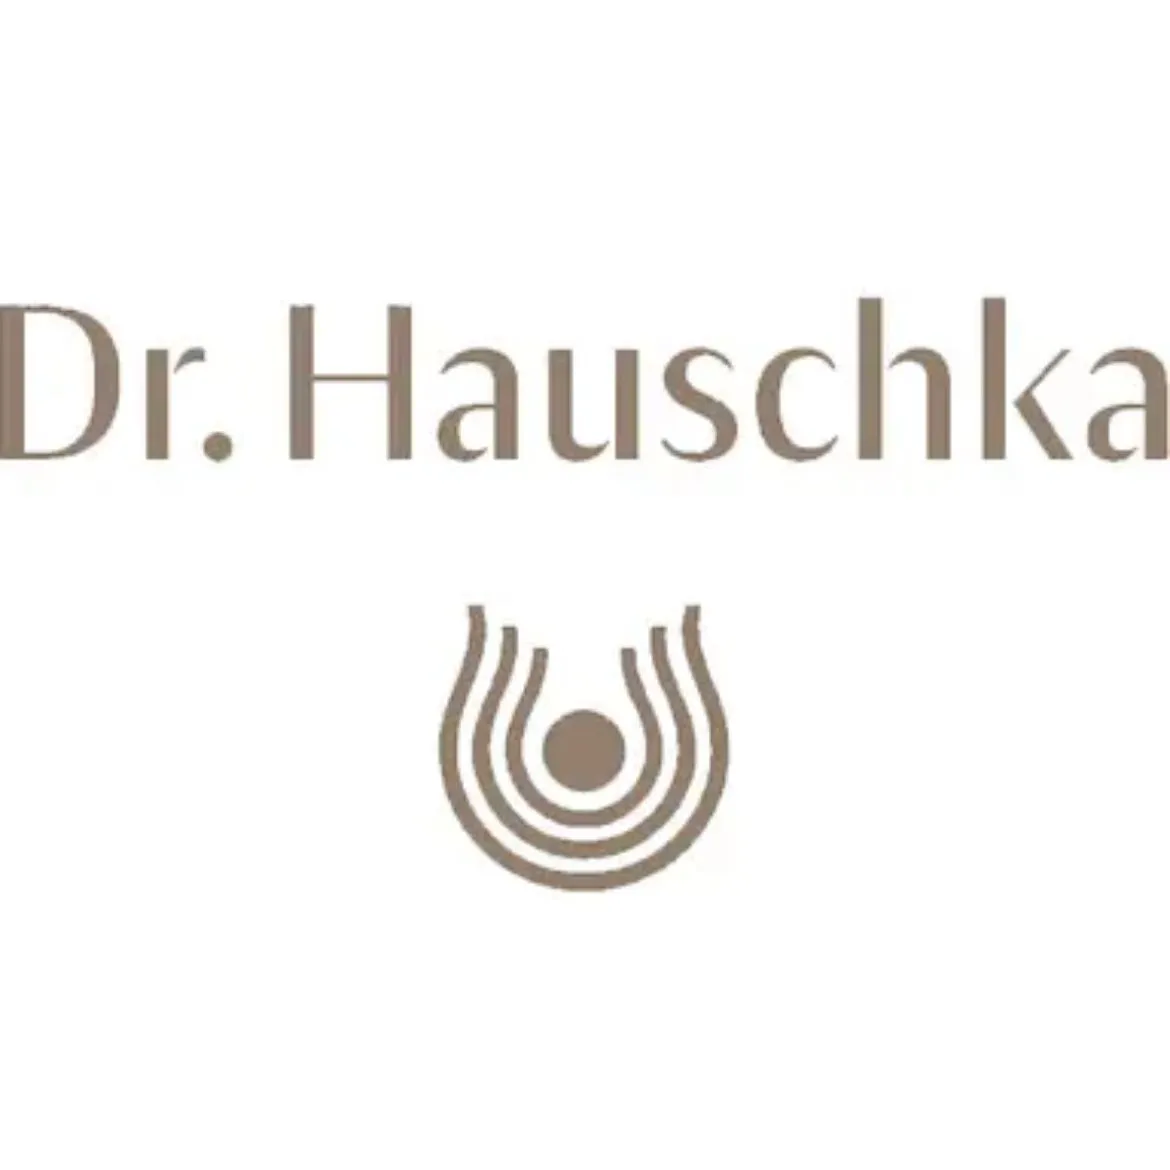 Dr Hauschka